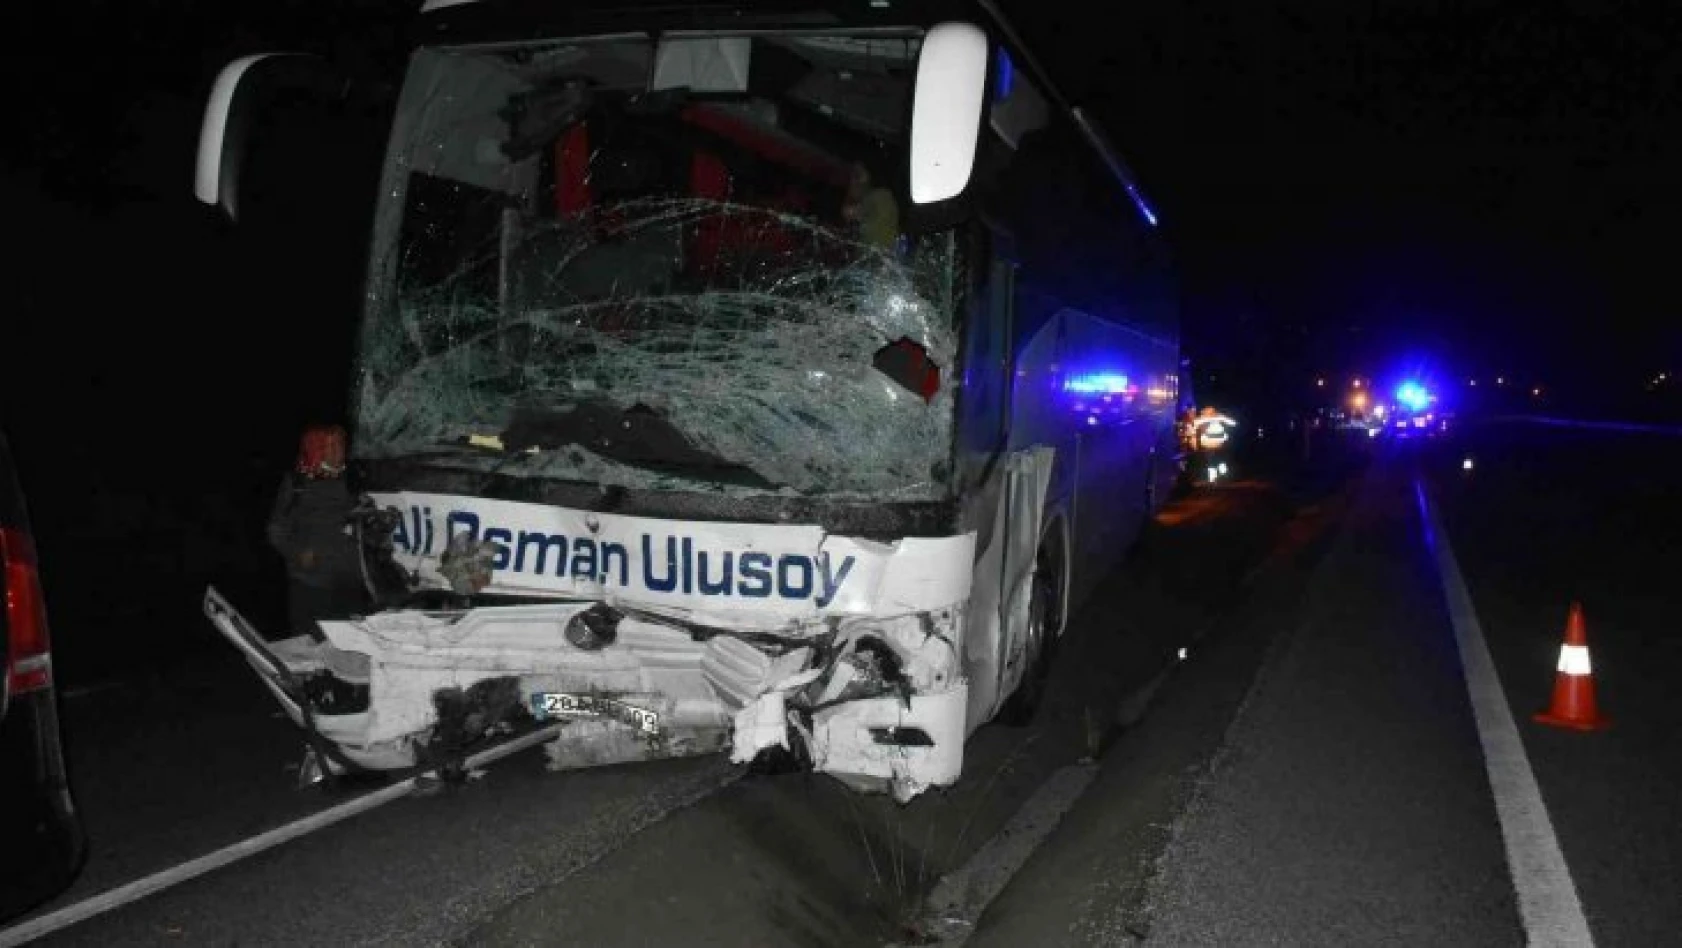 Otomobil ile otobüs kafa kafaya çarpıştı: 2 ölü 16 yaralı